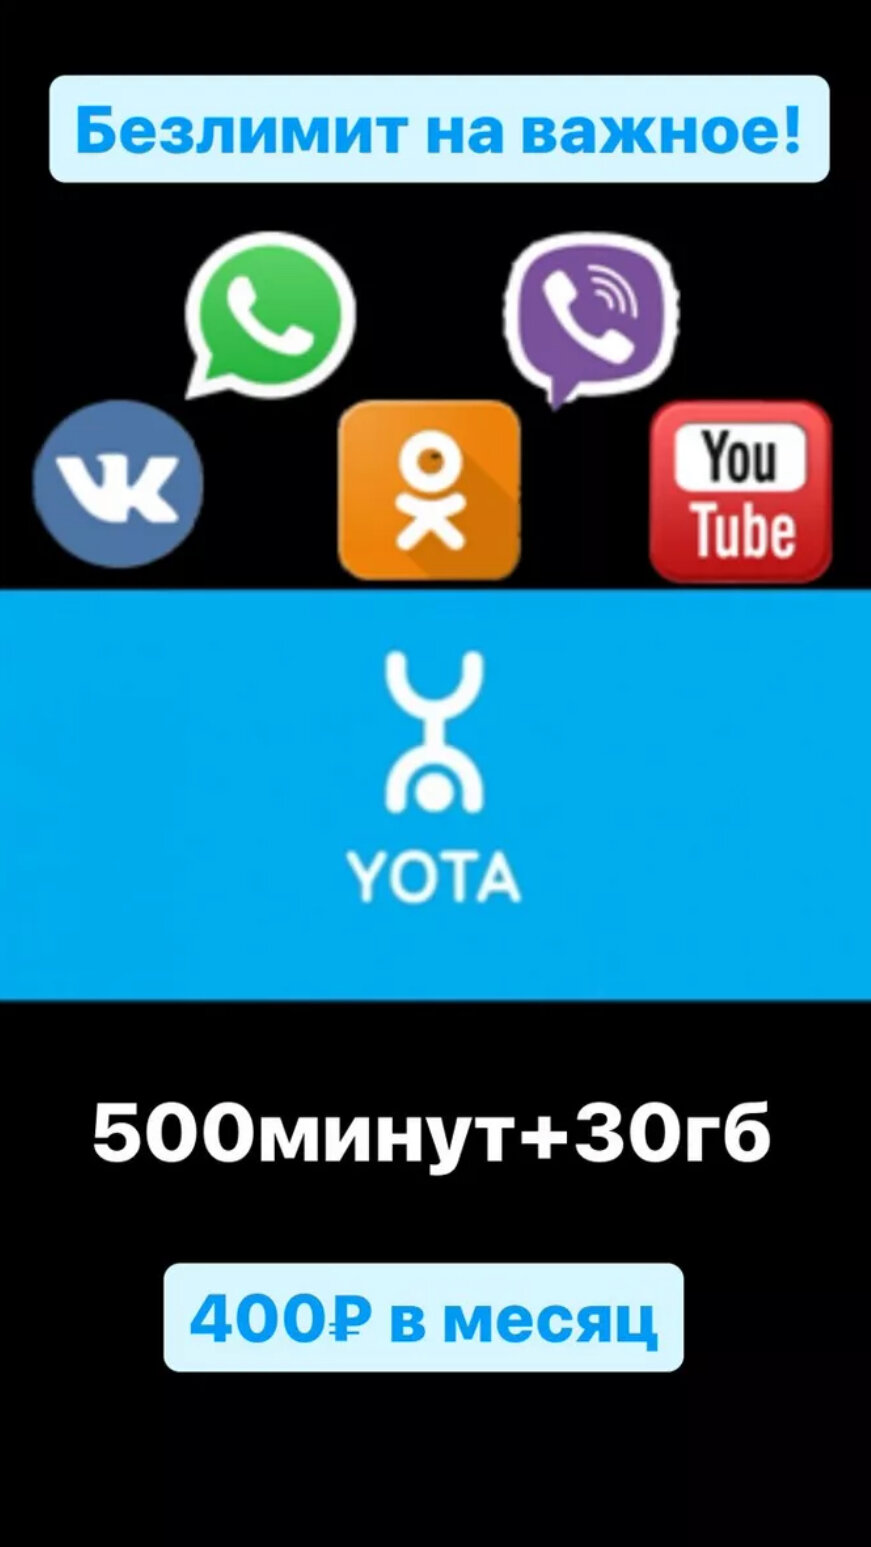 Yota с безлимитным Интернетом для телефона + Минуты